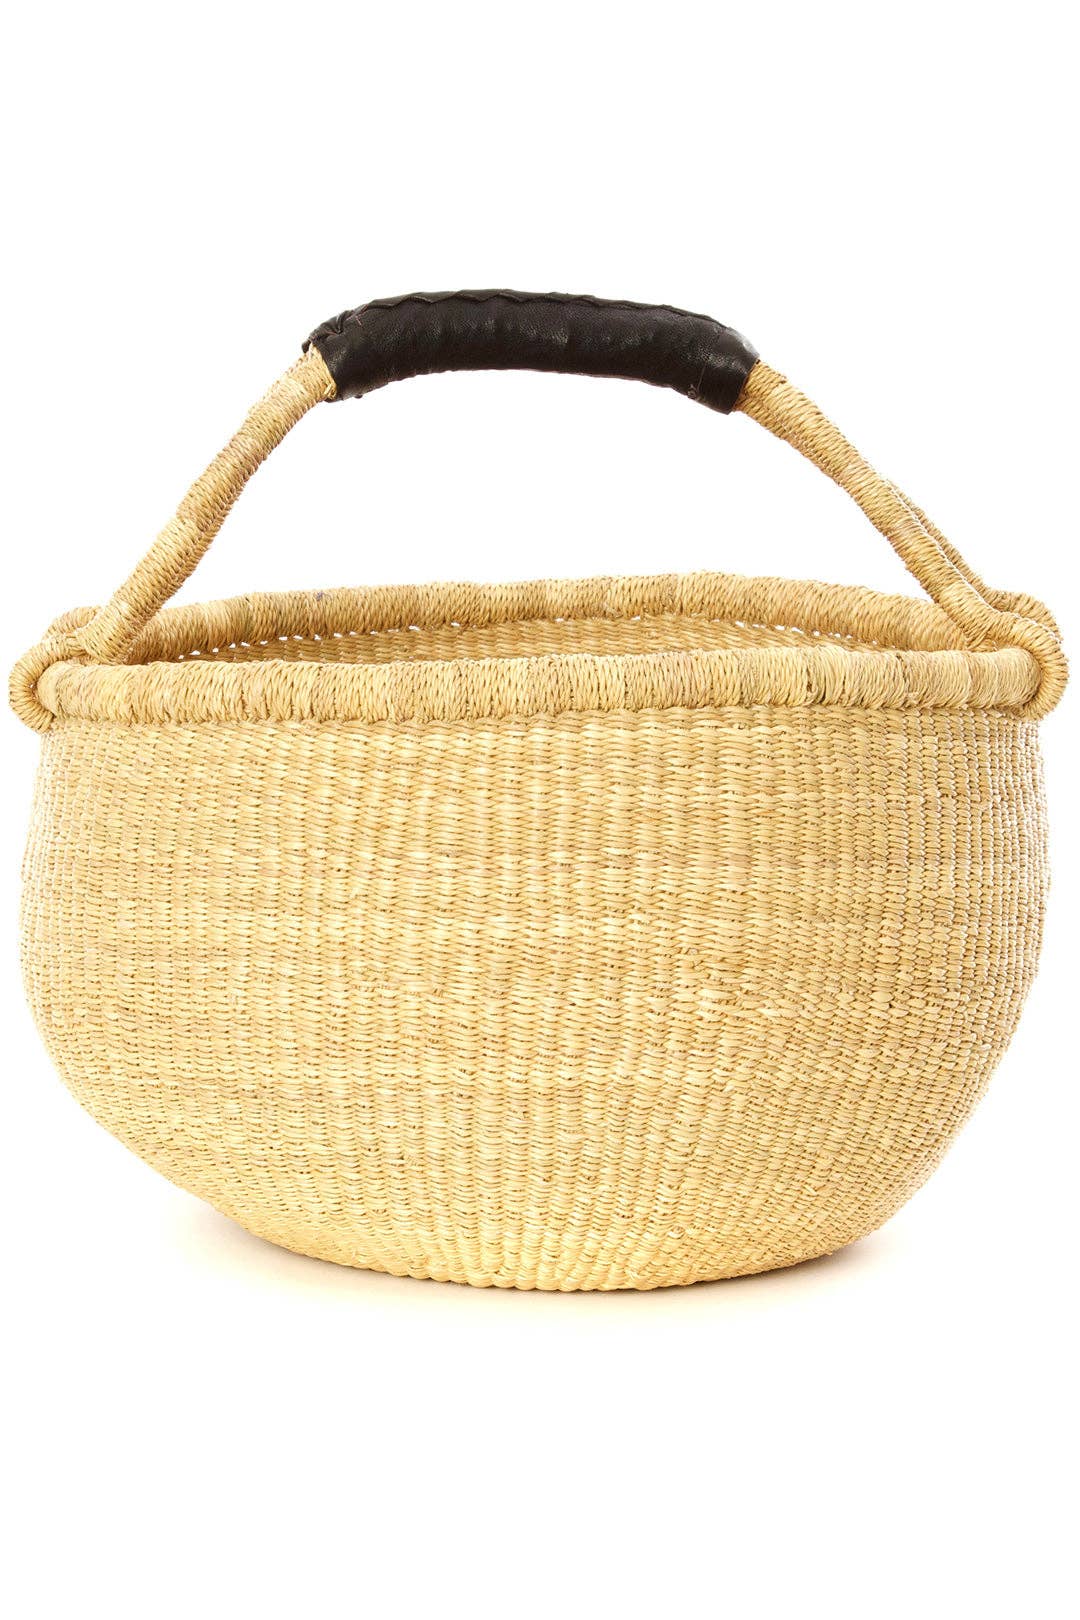 Basic Bolga Shopper Basket